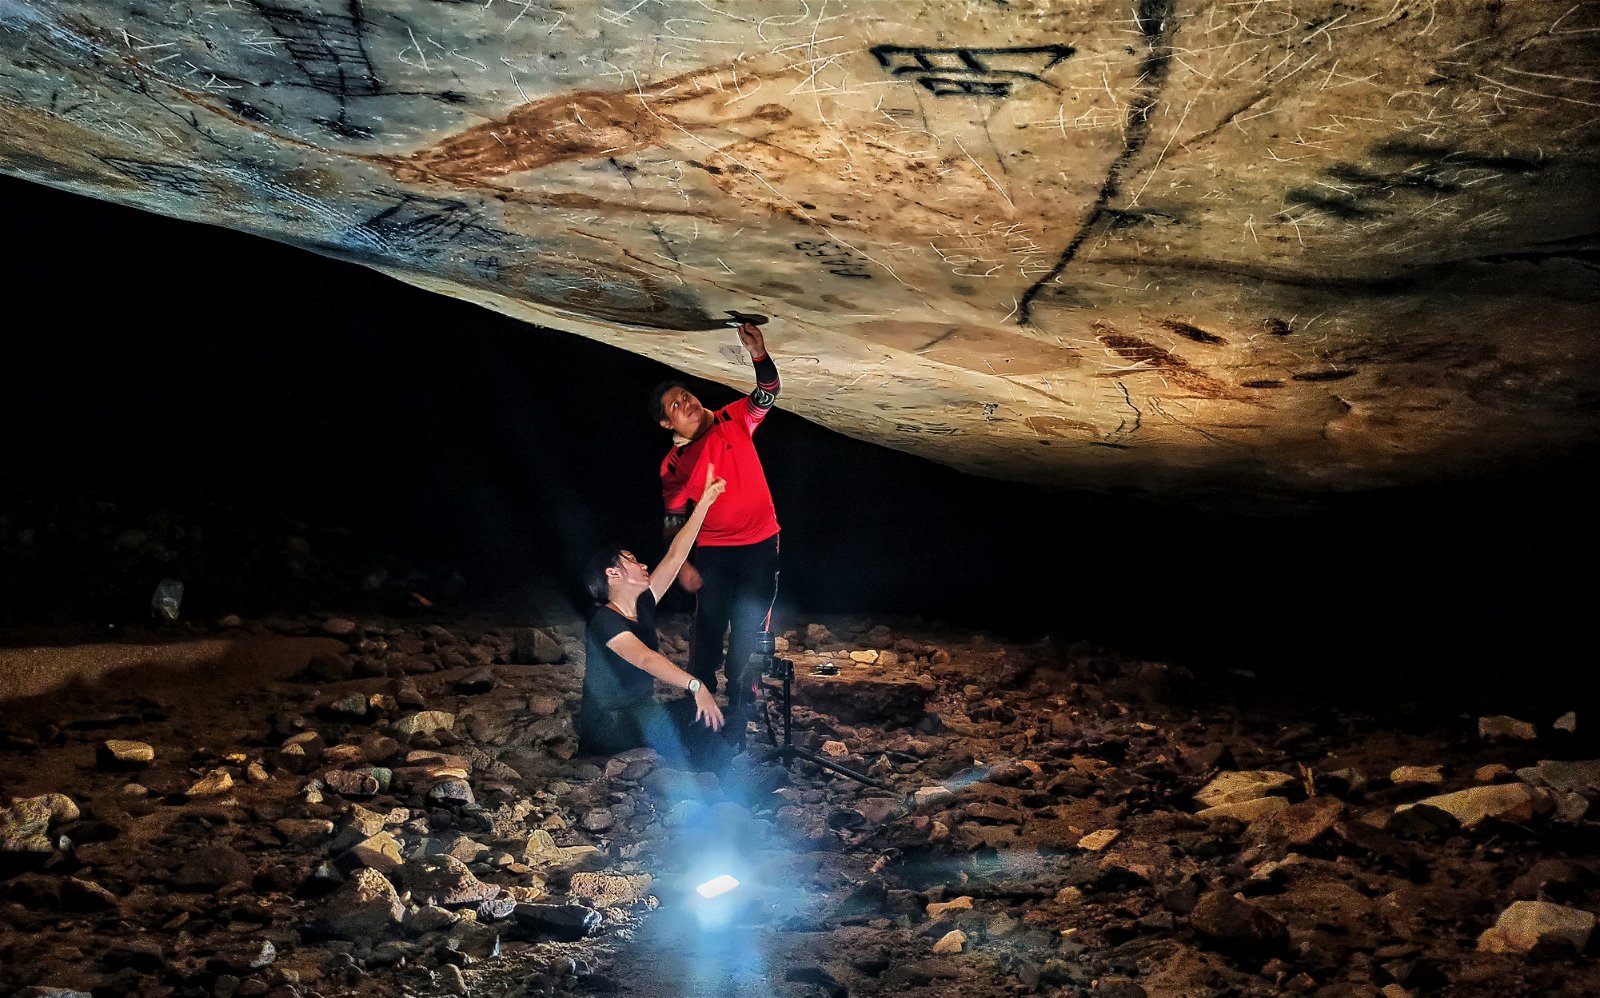 在该南部洞穴发现的4只“山猪”岩画，经观察和对比，与打扪洞“山猪”岩画有相似之处，不排除是同一族群或时代的画风。